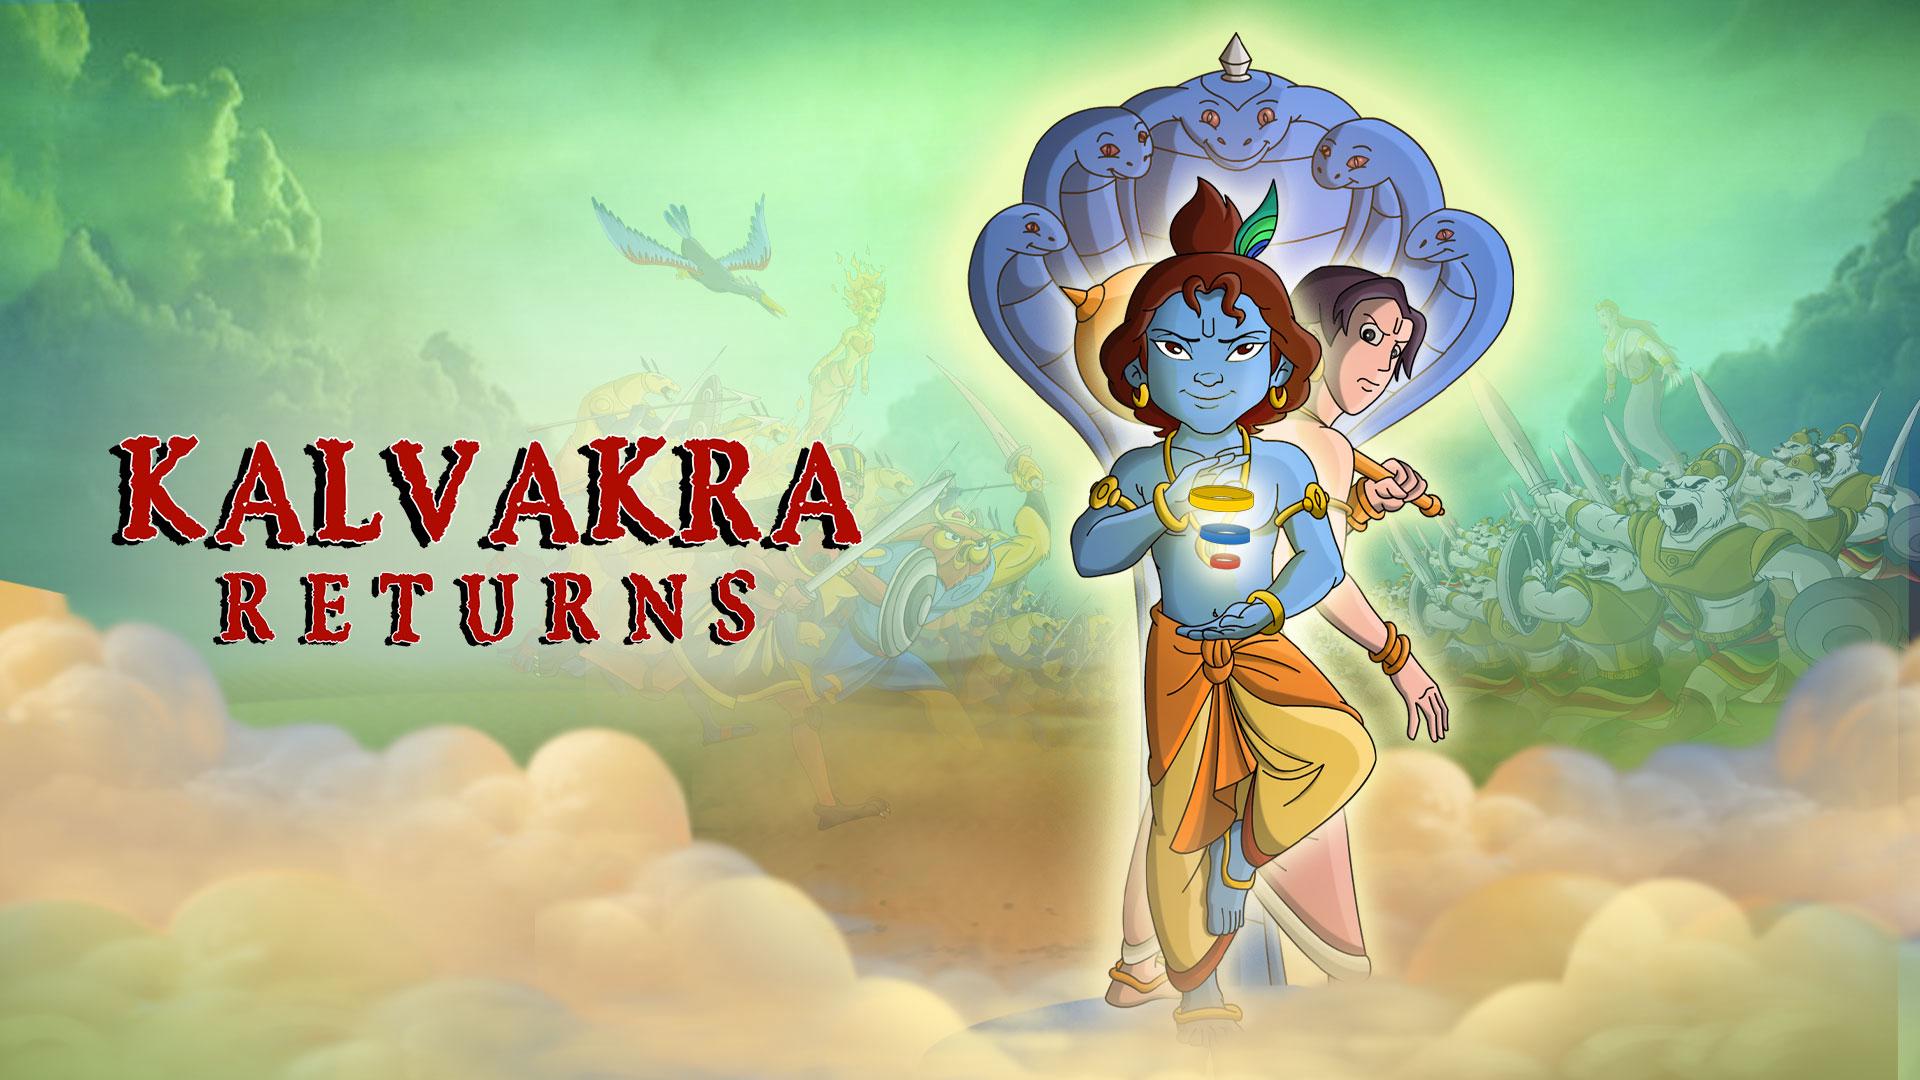 Watch krishna and balaram kalvakra returns Full Movies online on aha